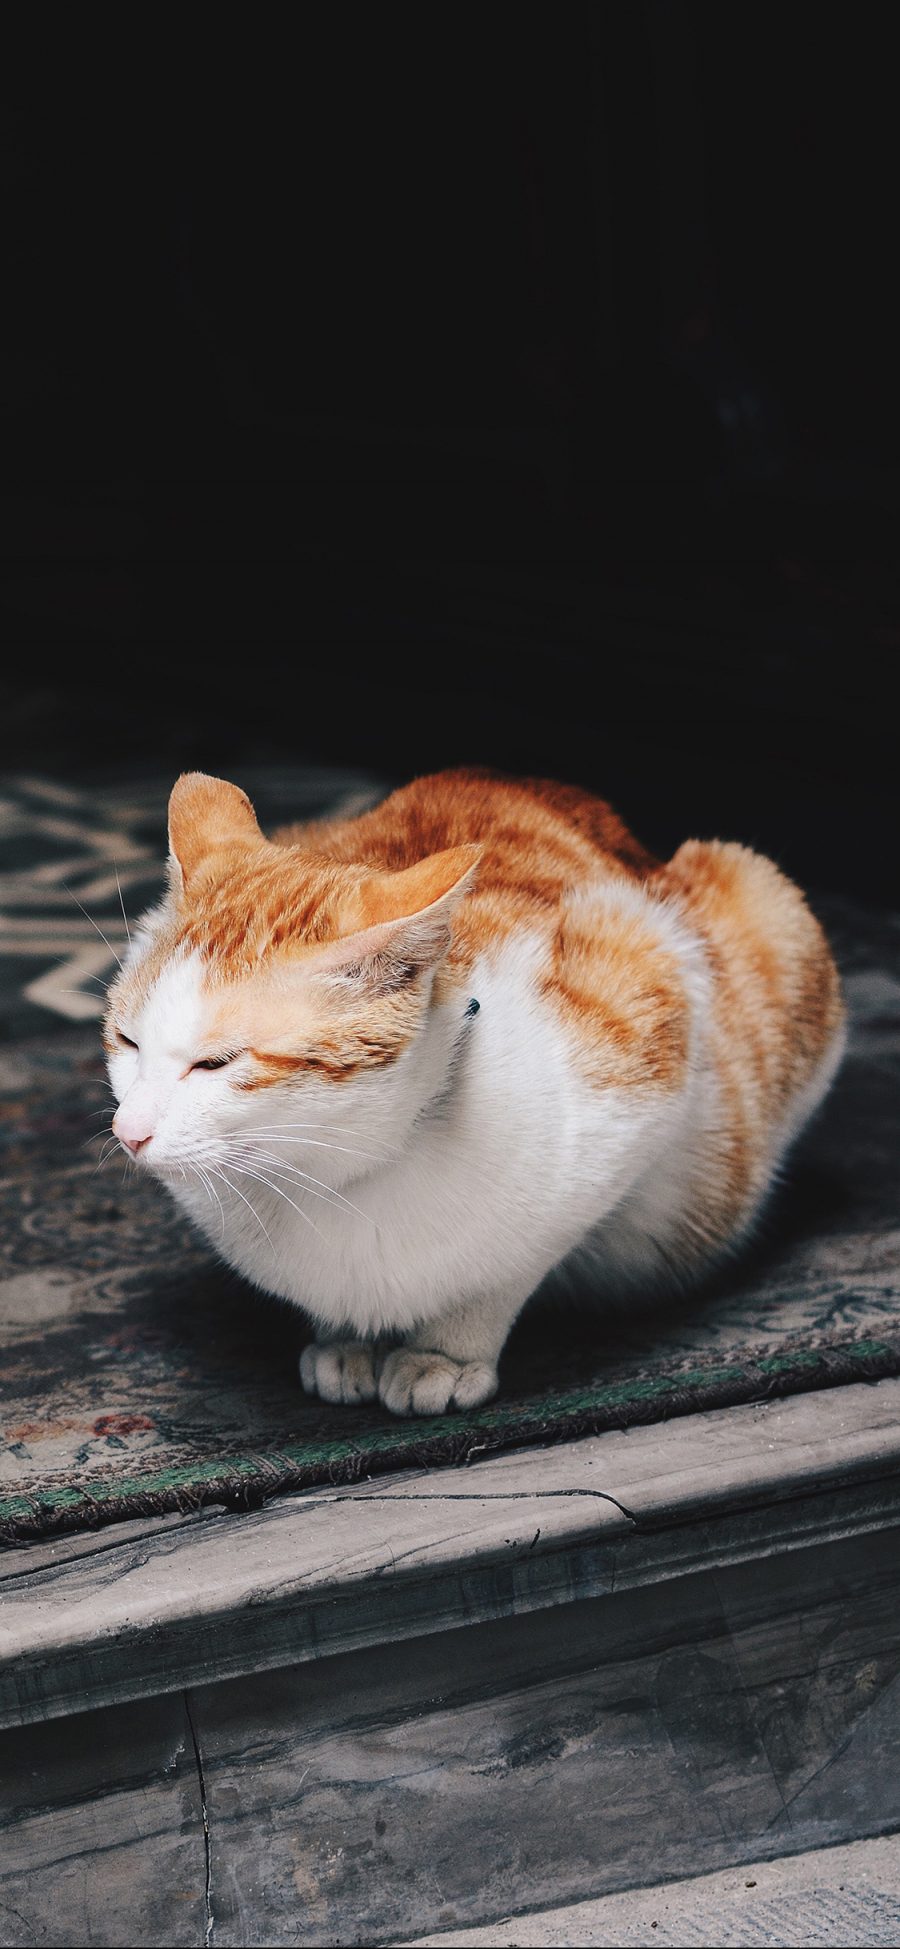 [2436×1125]猫咪 橘猫 肥猫 坐姿 苹果手机壁纸图片